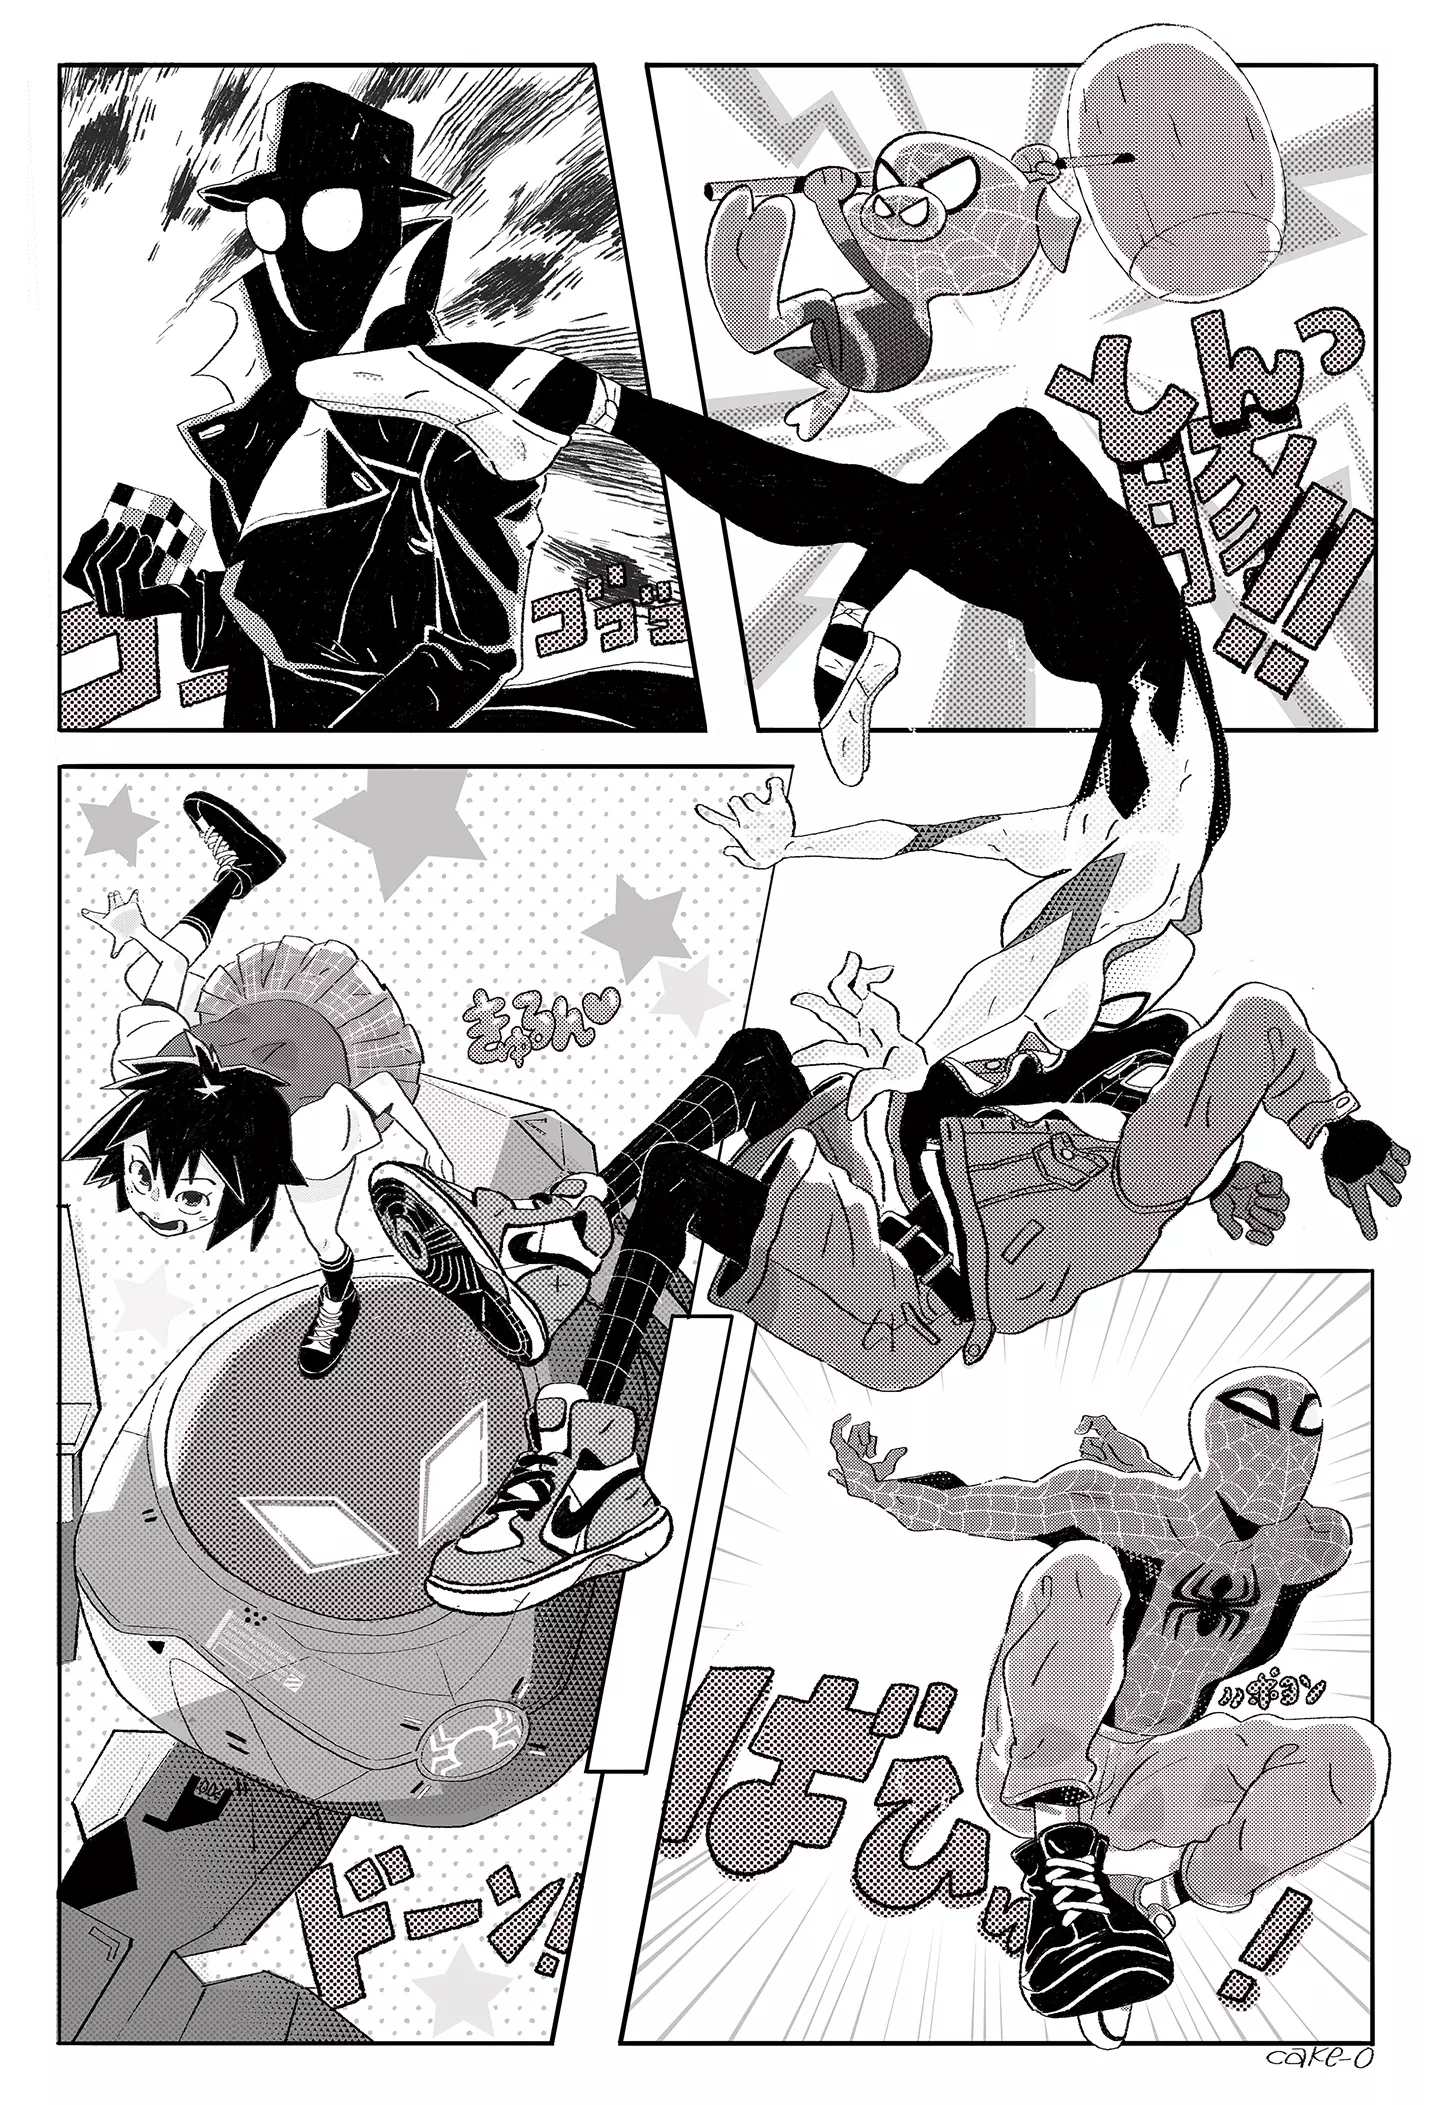 Spiderverse (1 of 1), Keiko Murayama